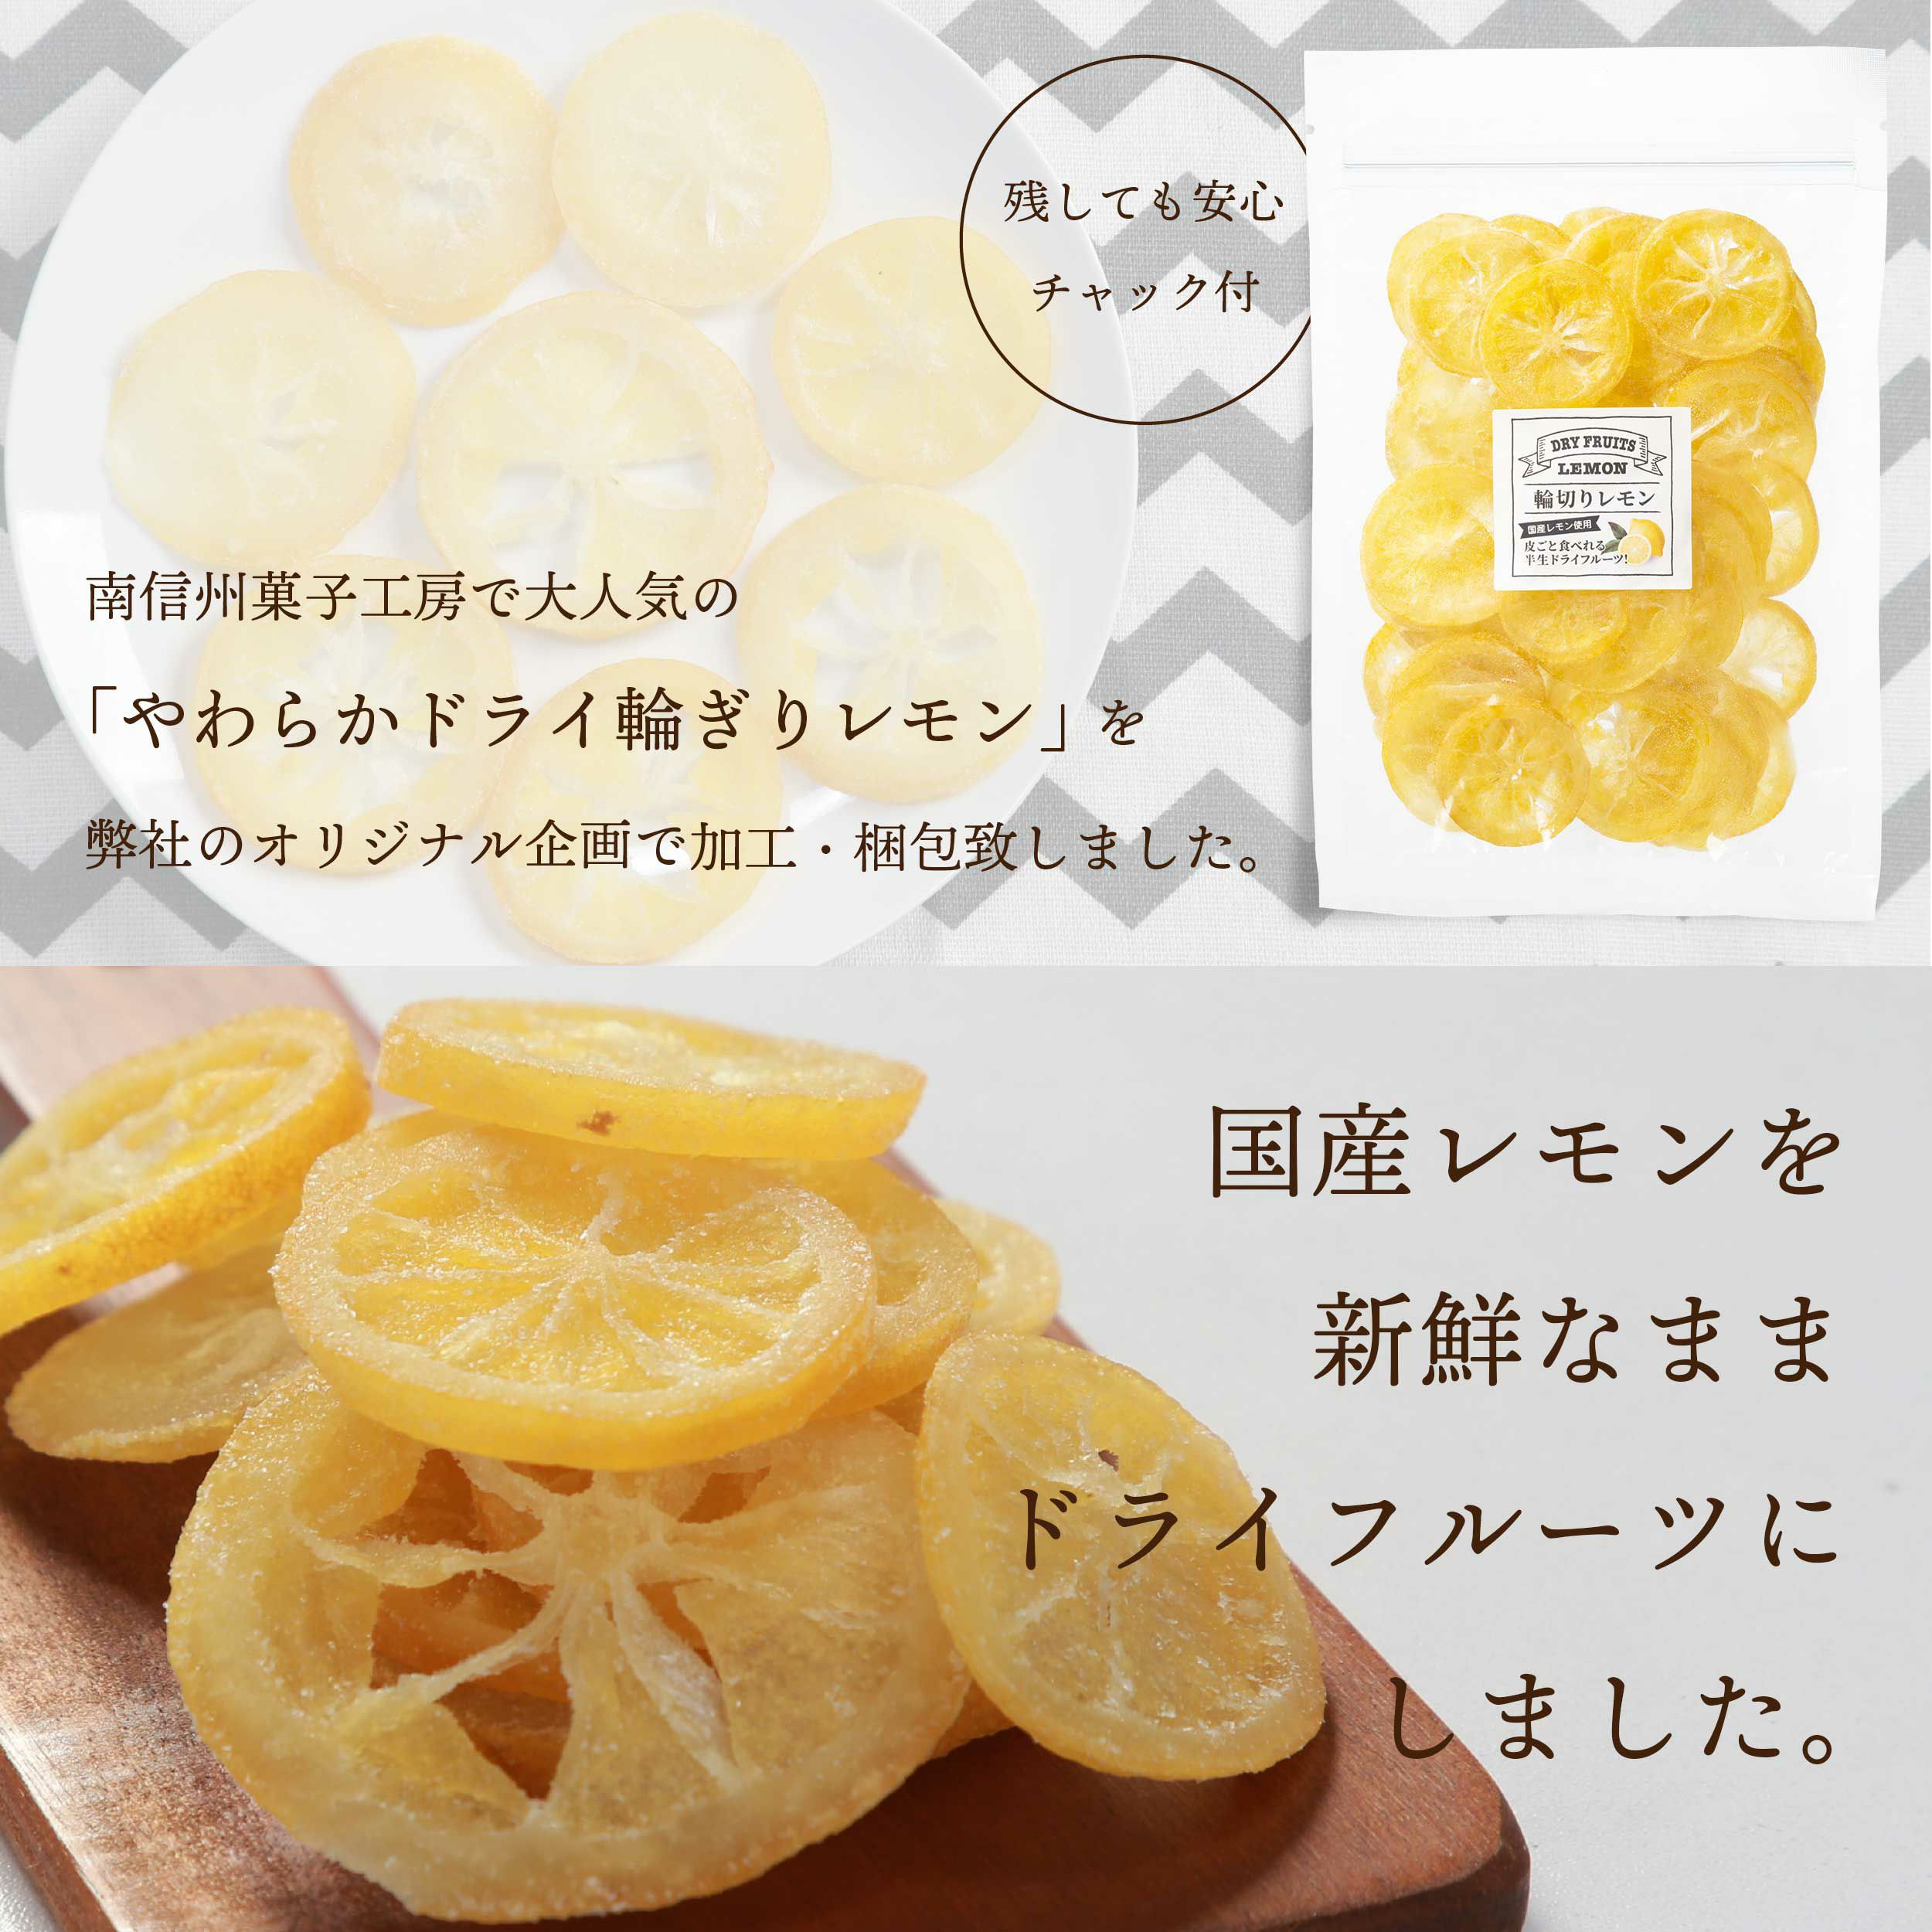 ドライフルーツ 国産 輪切り レモン 200g 特長2